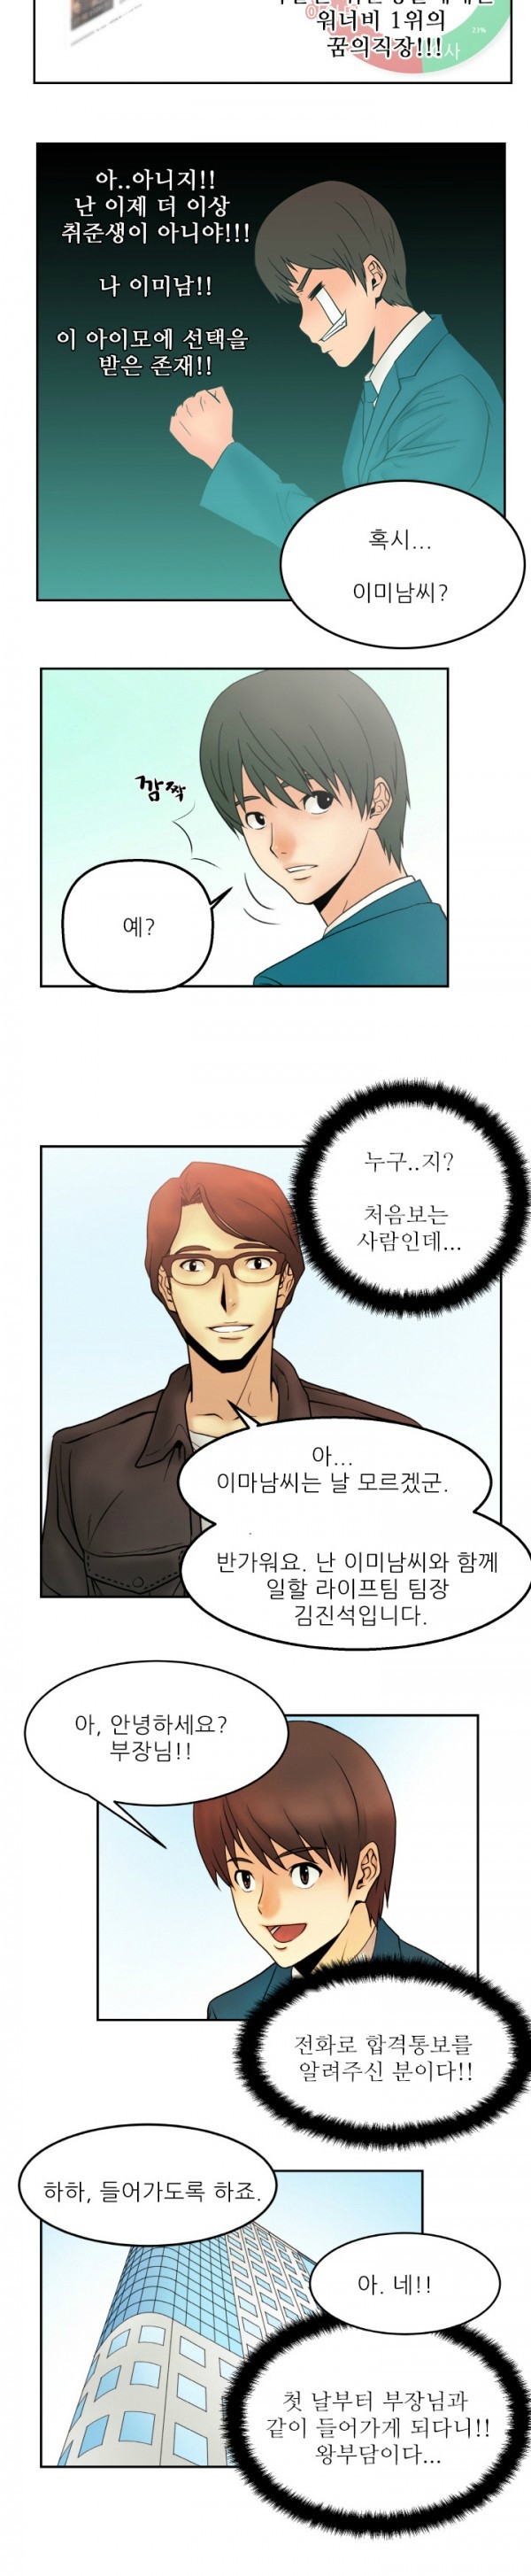 [Minu Mindu] Office Lady Vol. 1 [Korean] 16